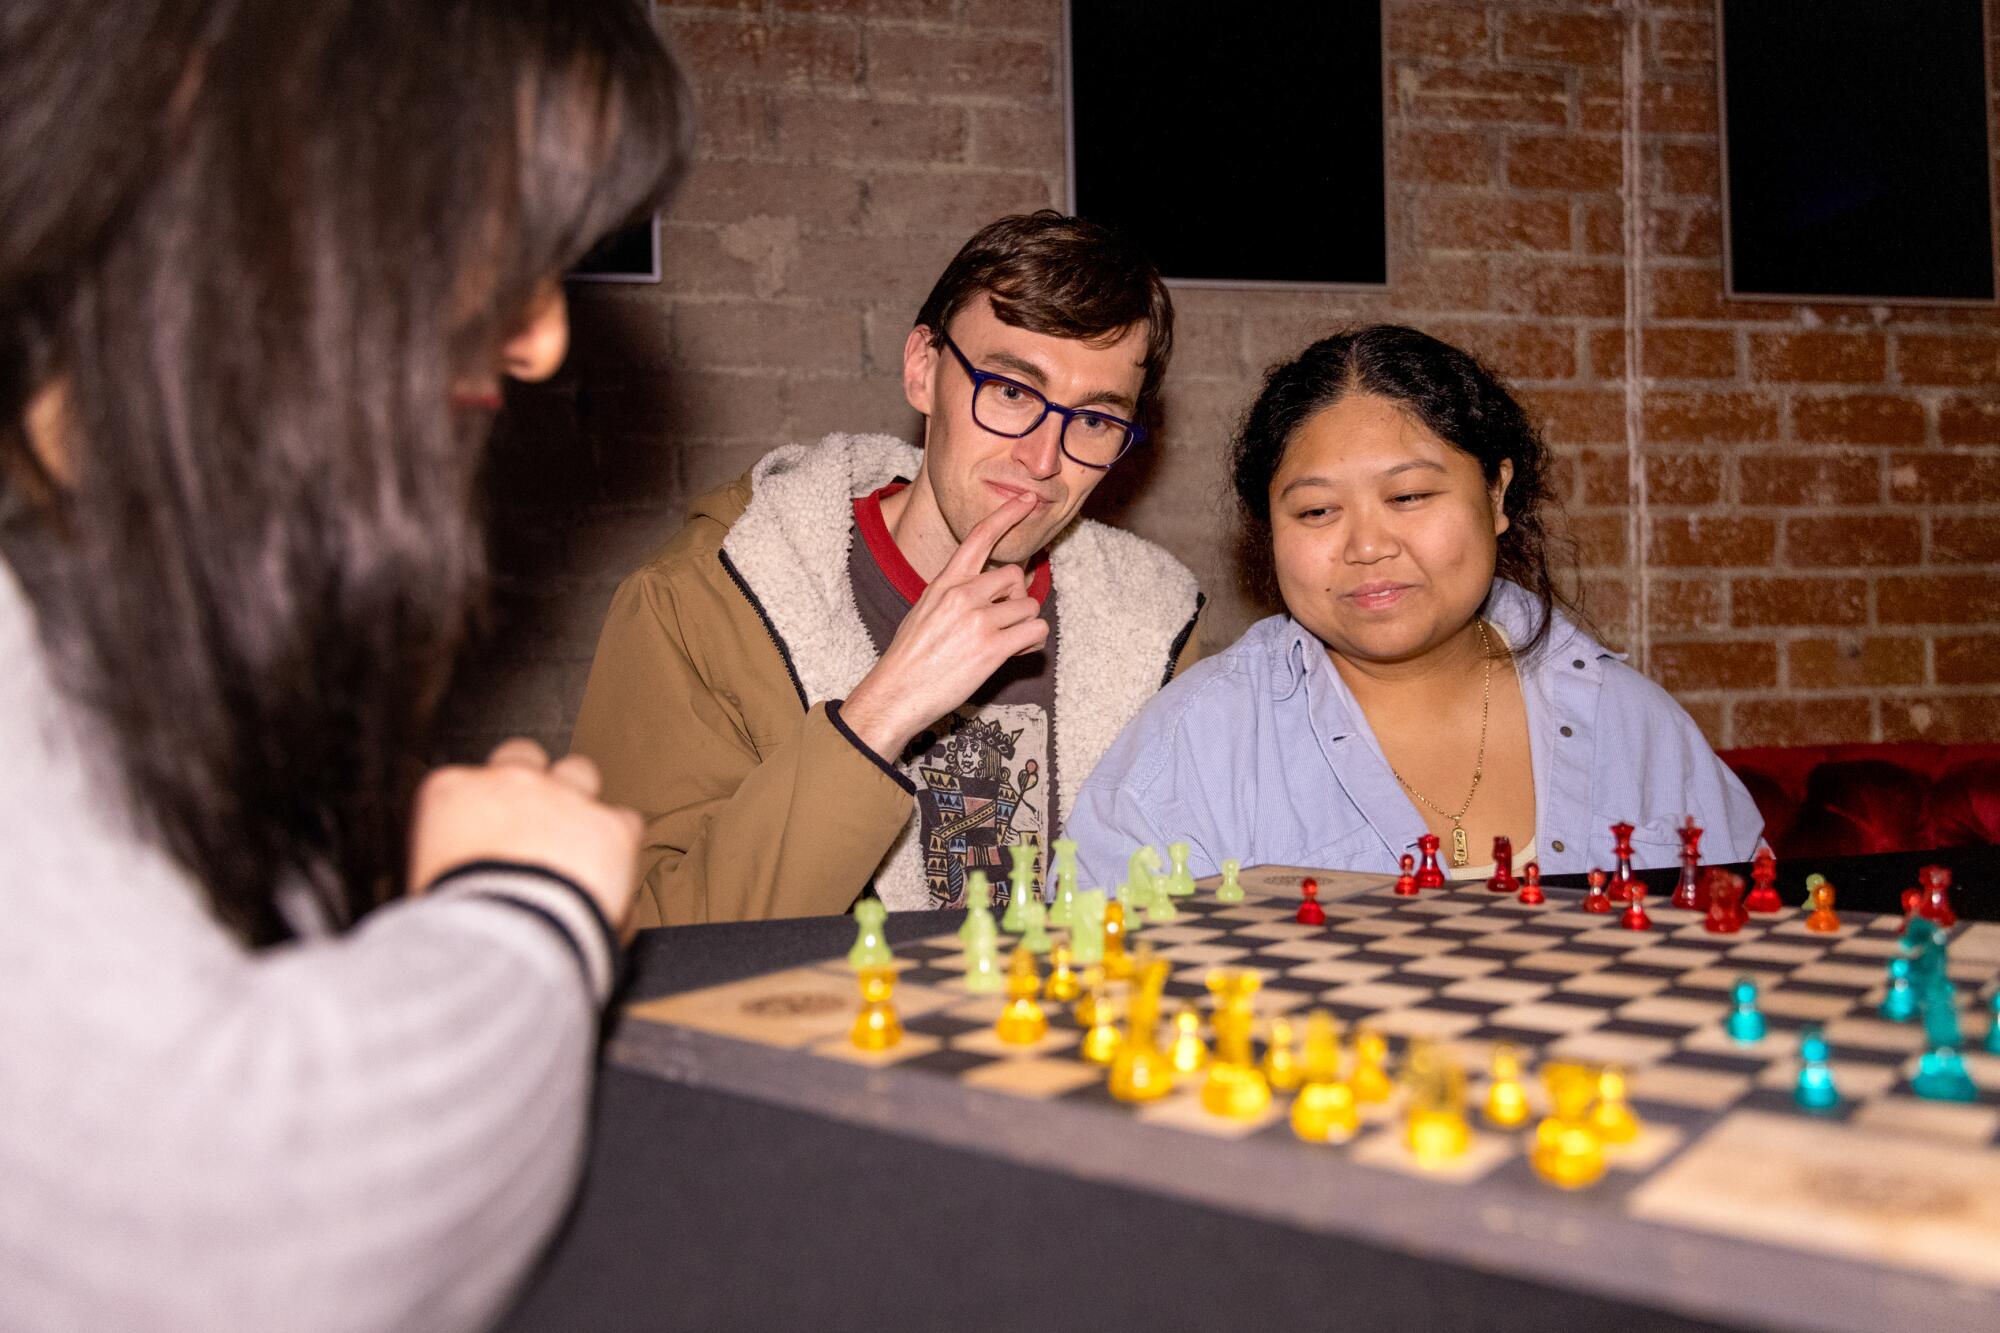 Drei Personen spielen gemeinsam Schach auf einem Mehrspielerbrett.